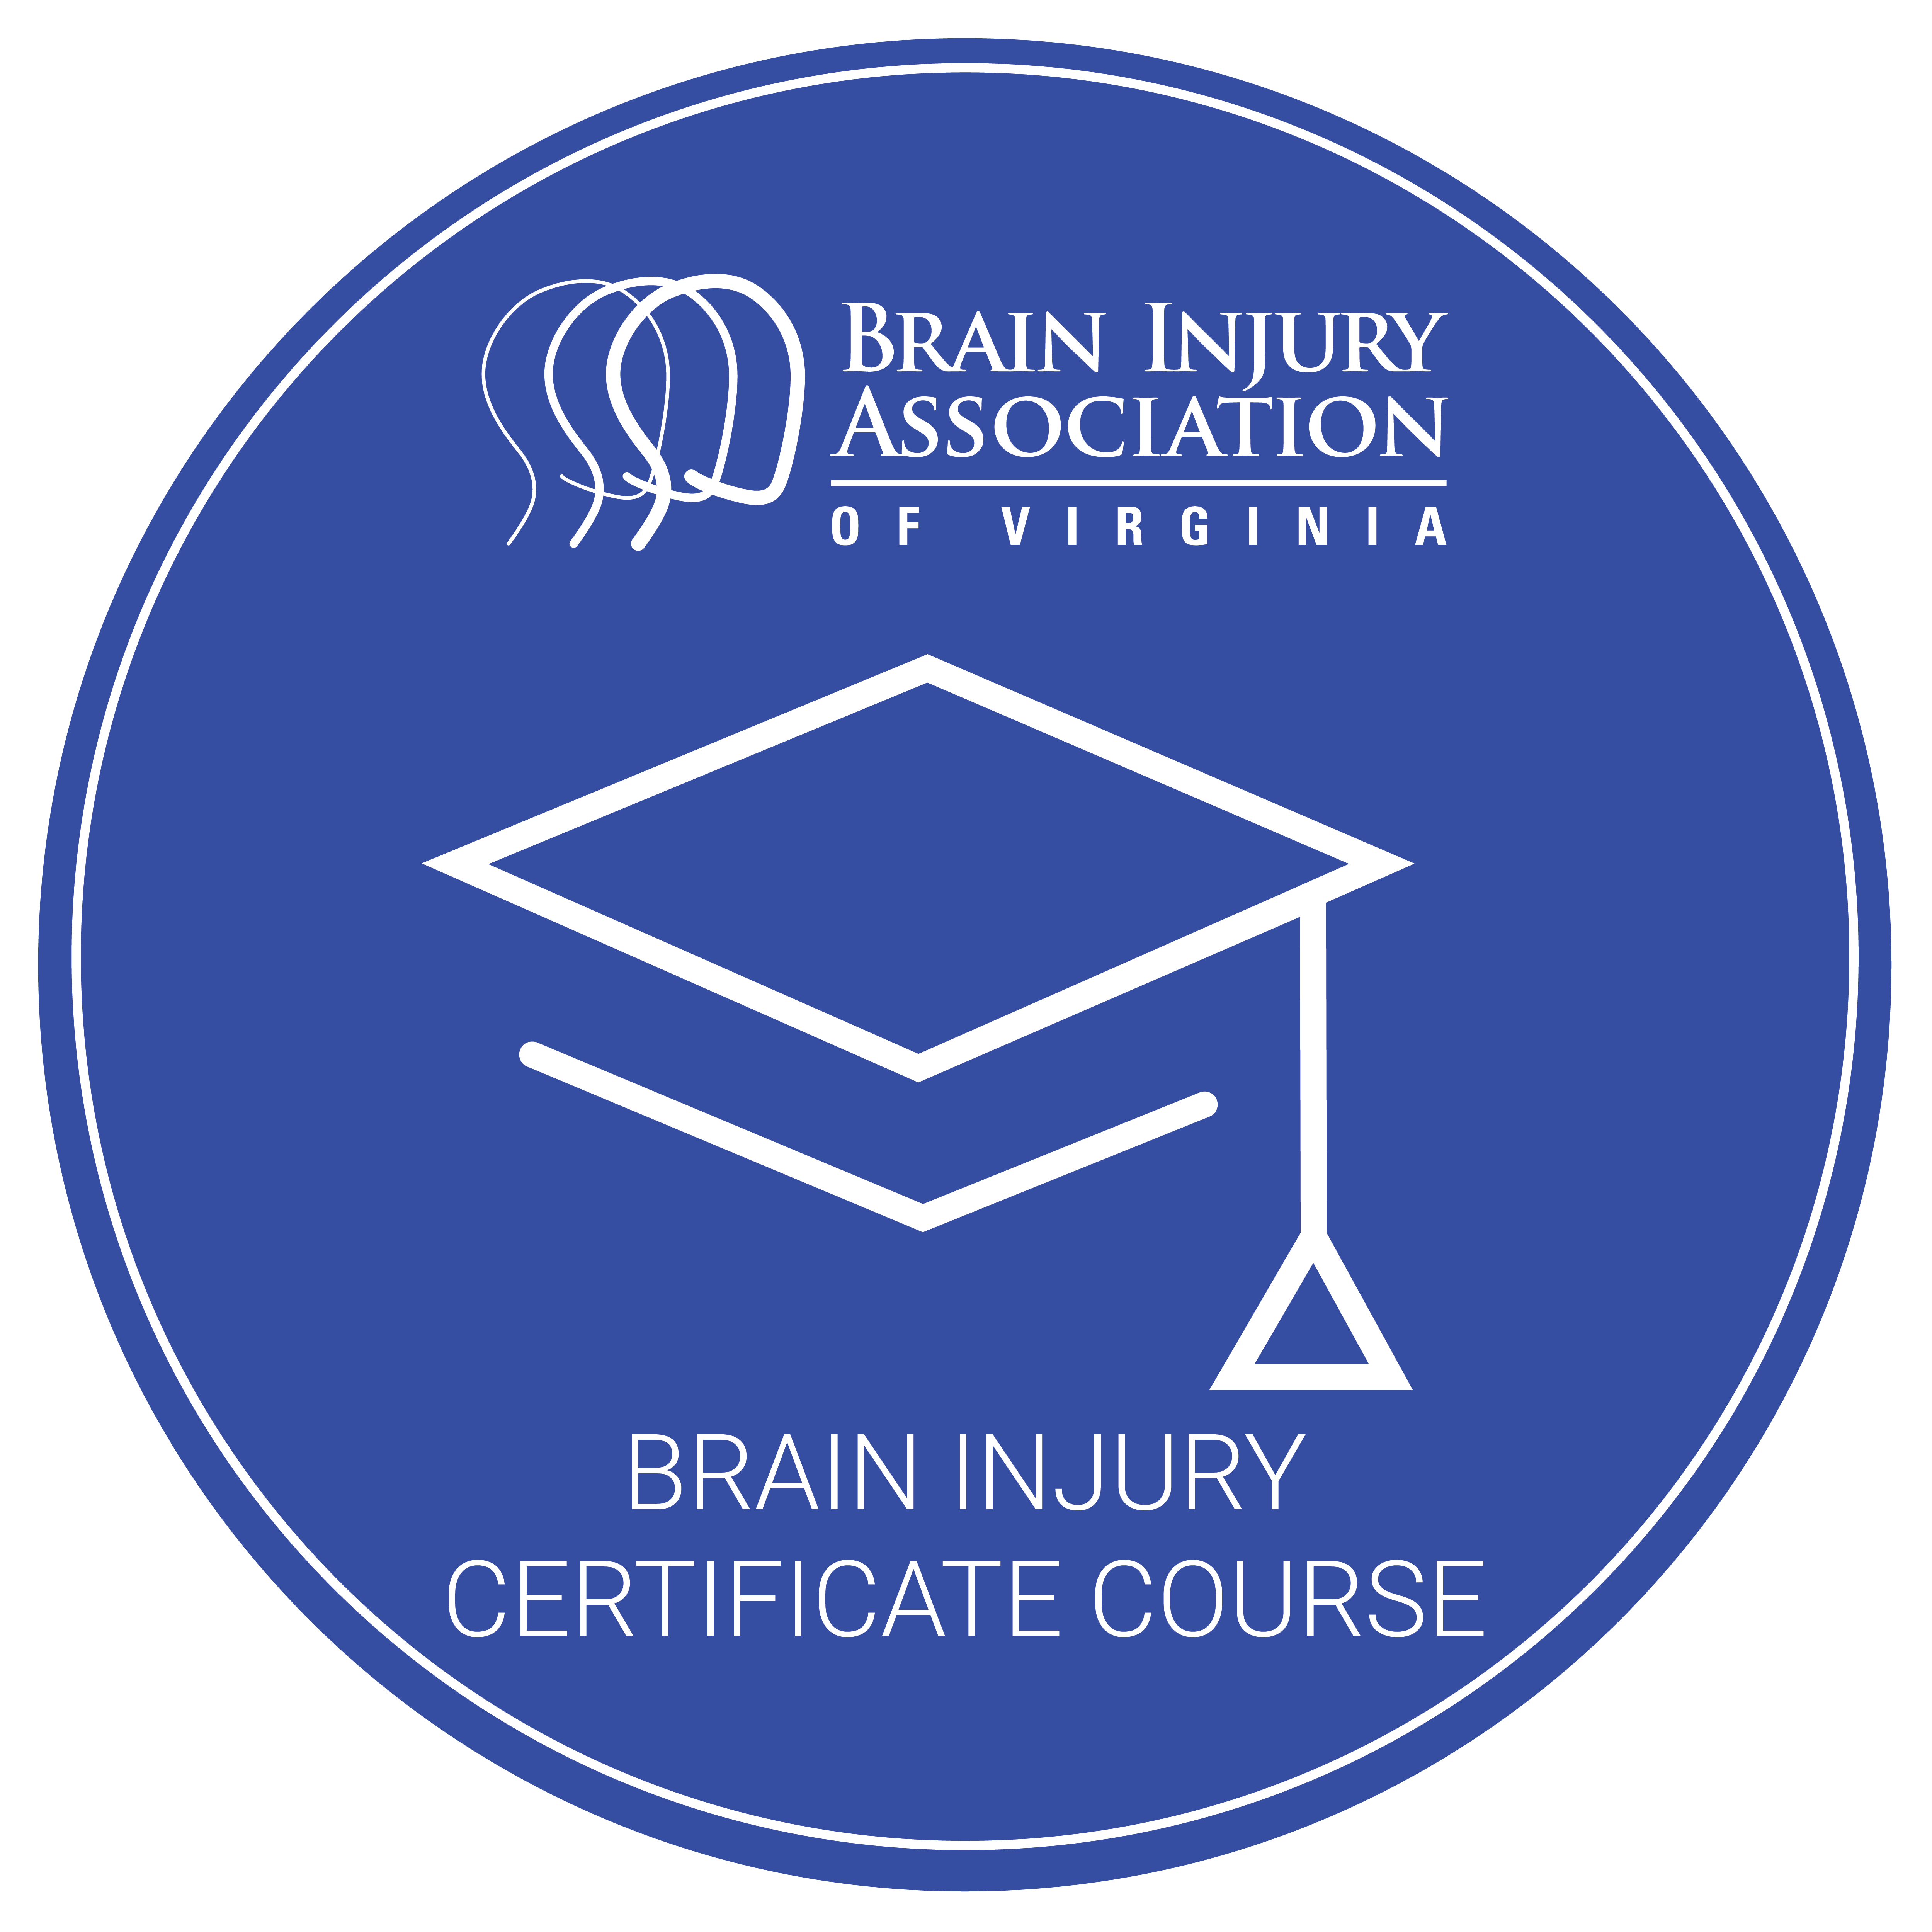 Certificate course logo